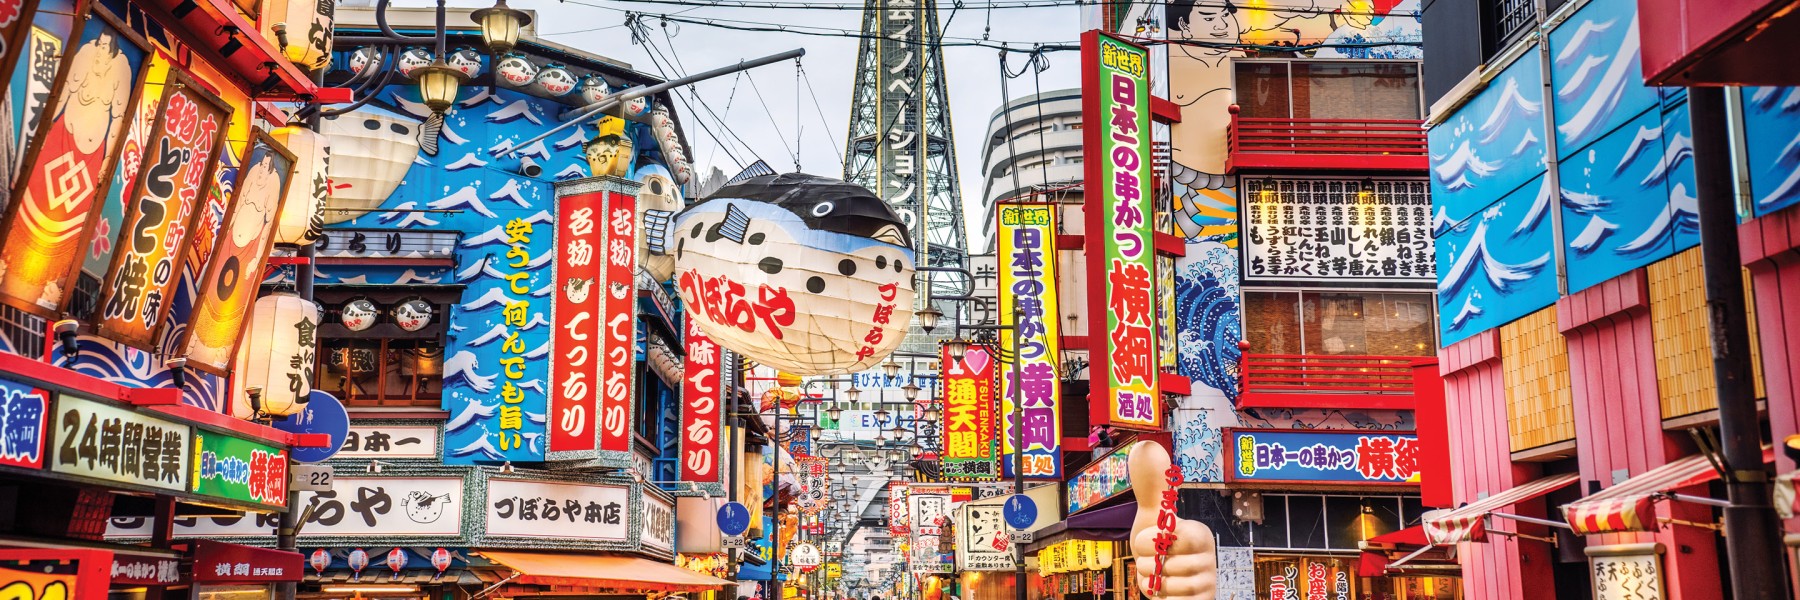 Discover Japan with Osaka Globus